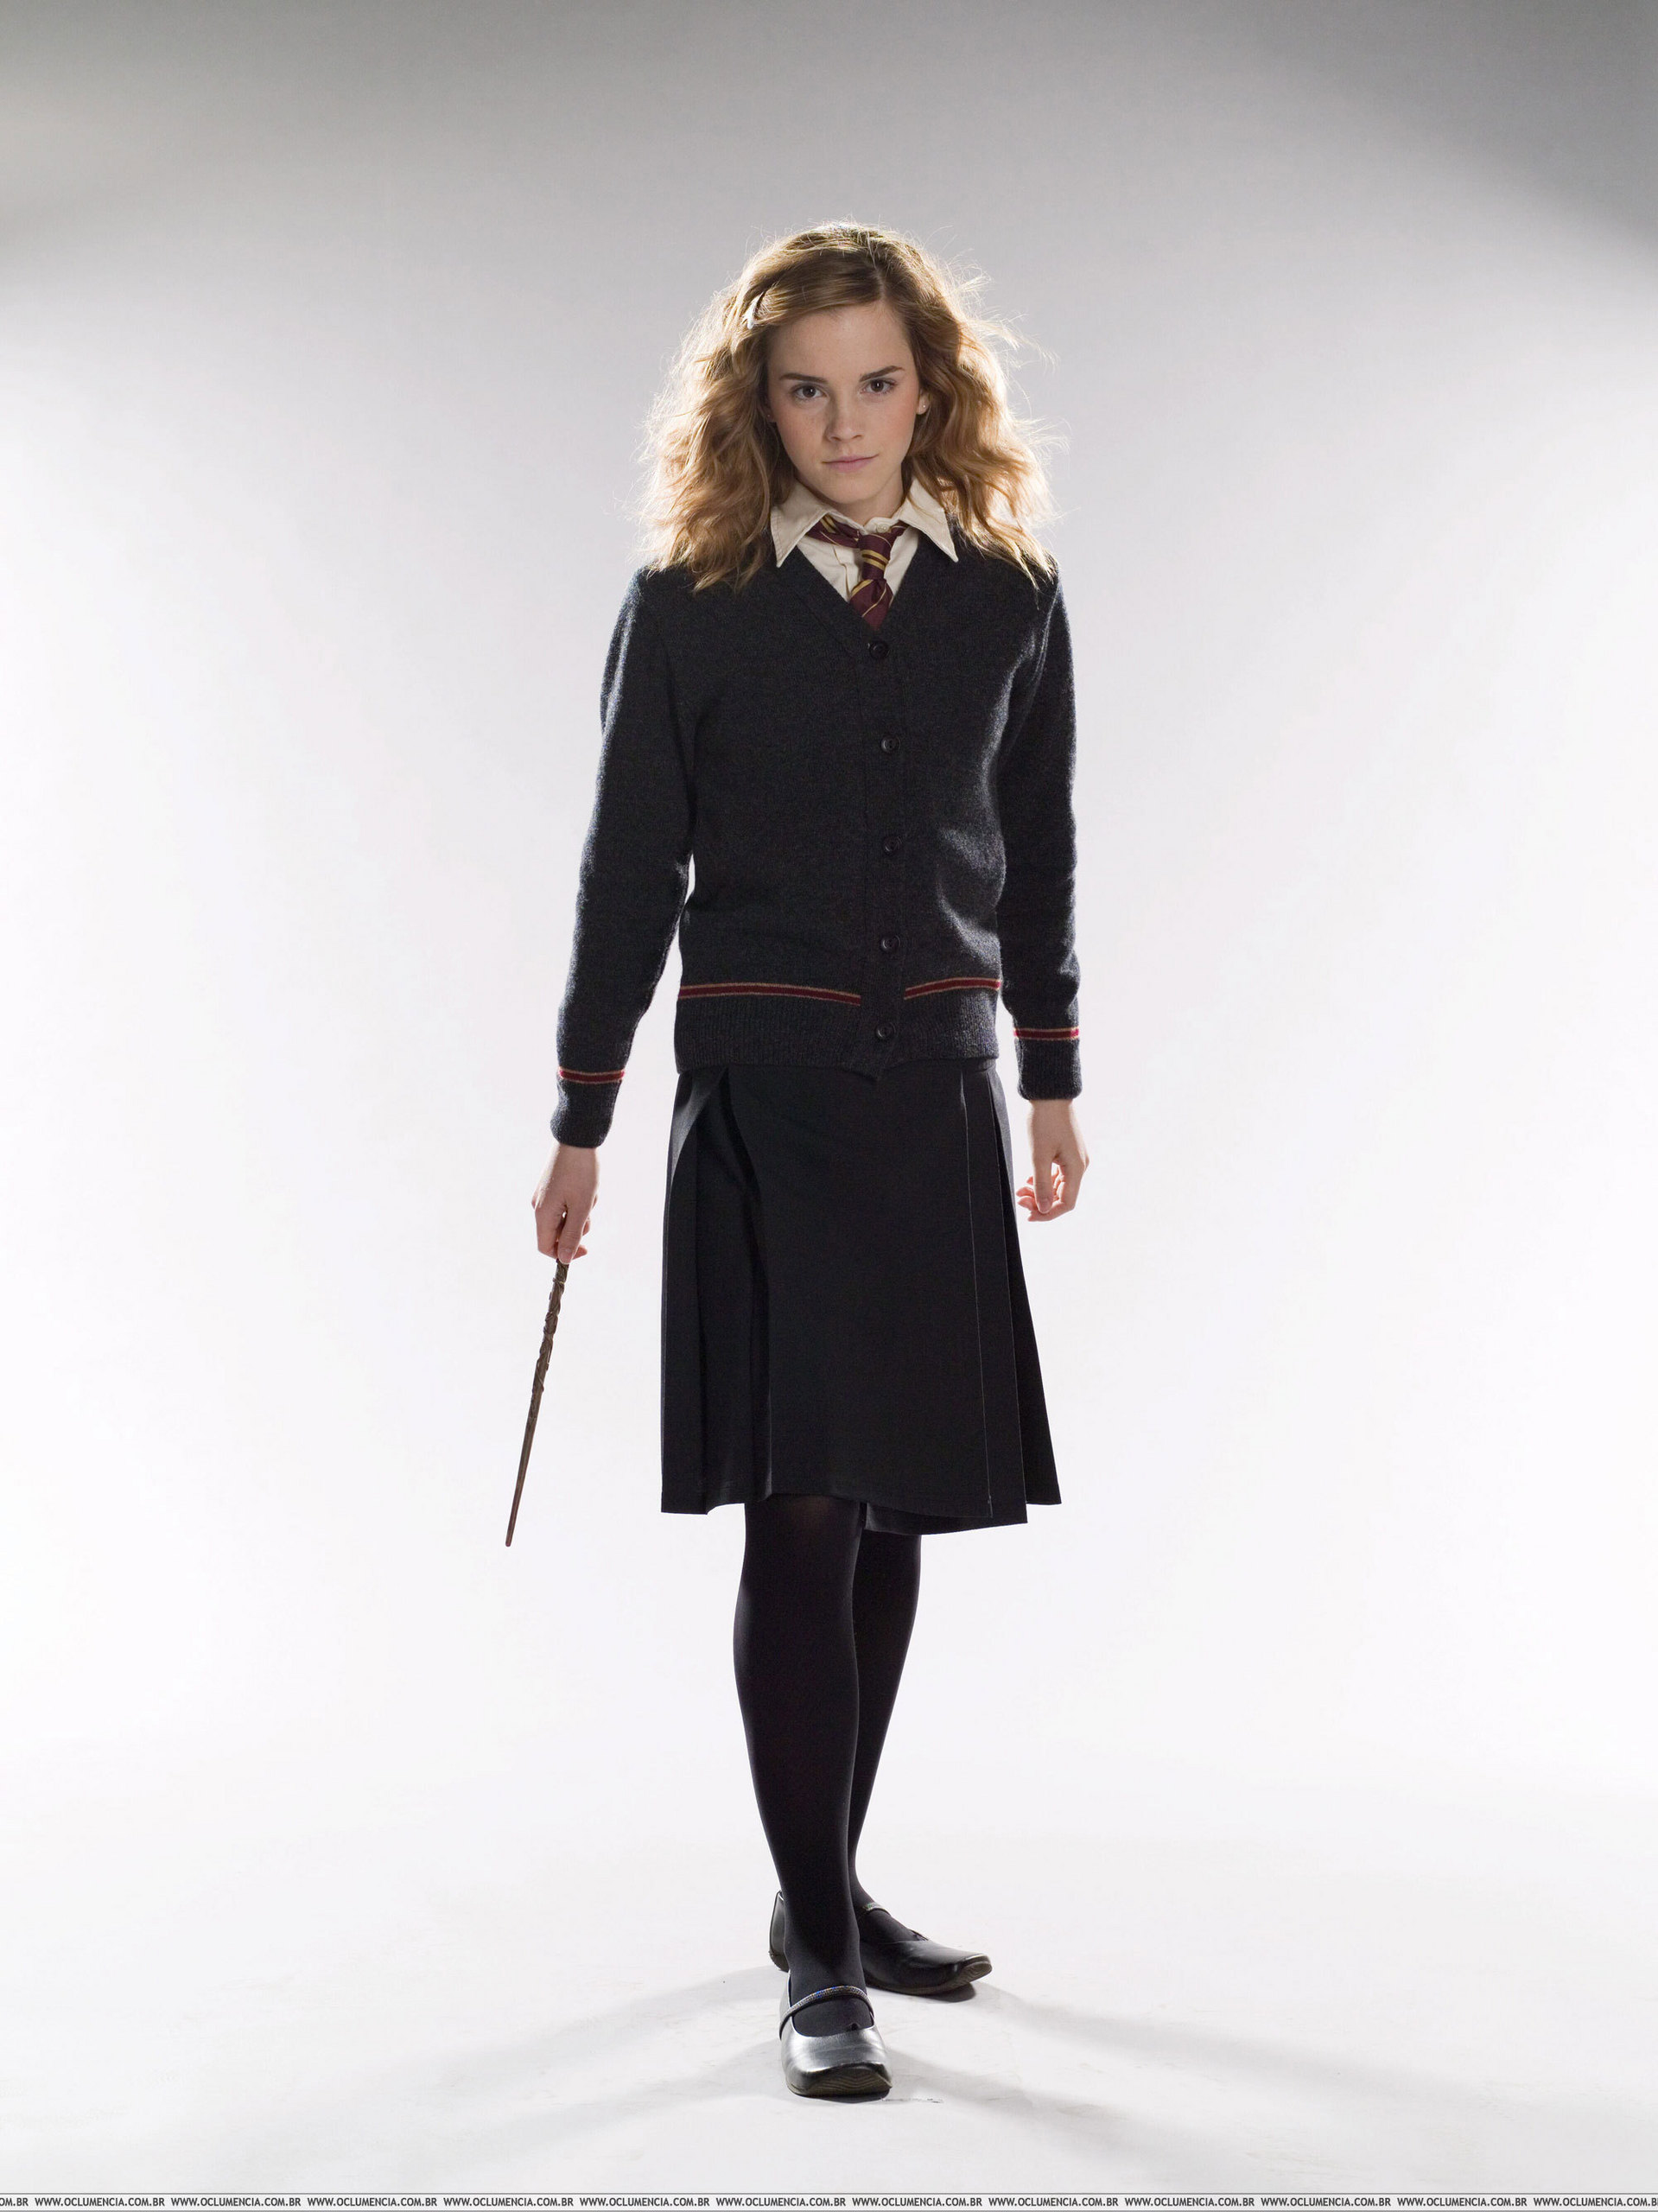 Hermione Granger - Harry Potter Wiki - Neoseeker